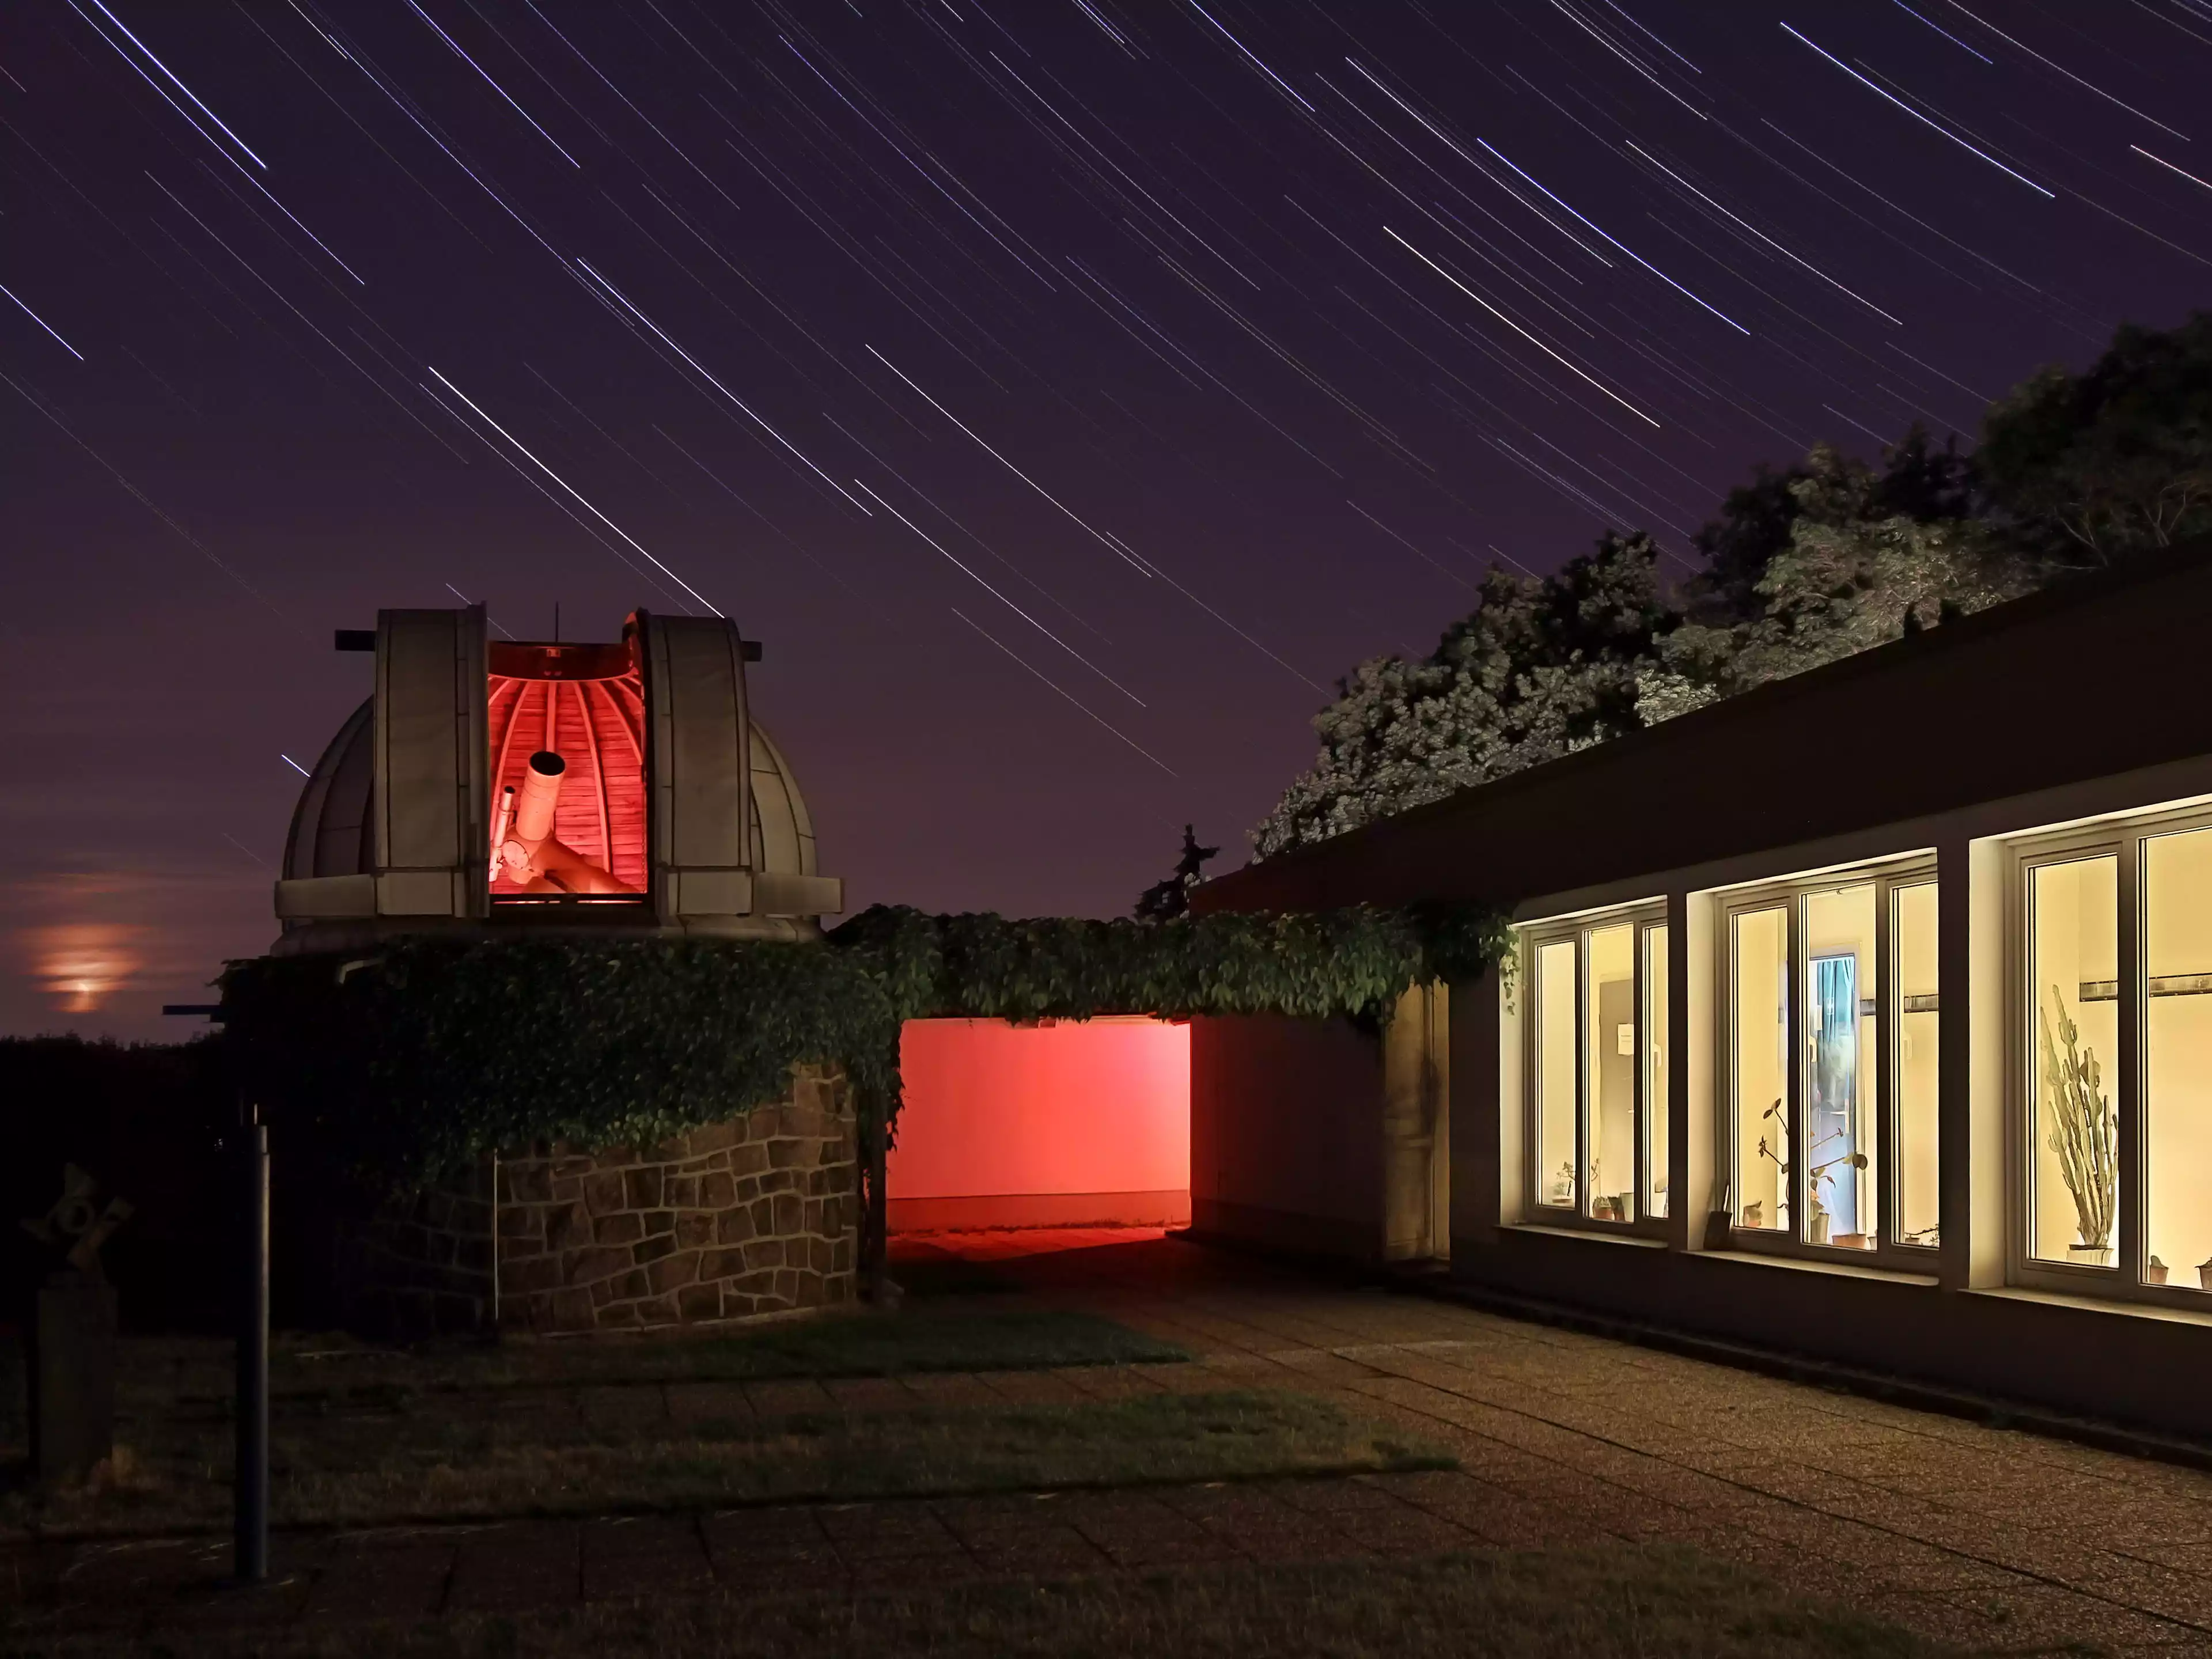 Zeiss Coudé Refraktor auf der Beobachtungsterrasse der Sternwarte Radebeul